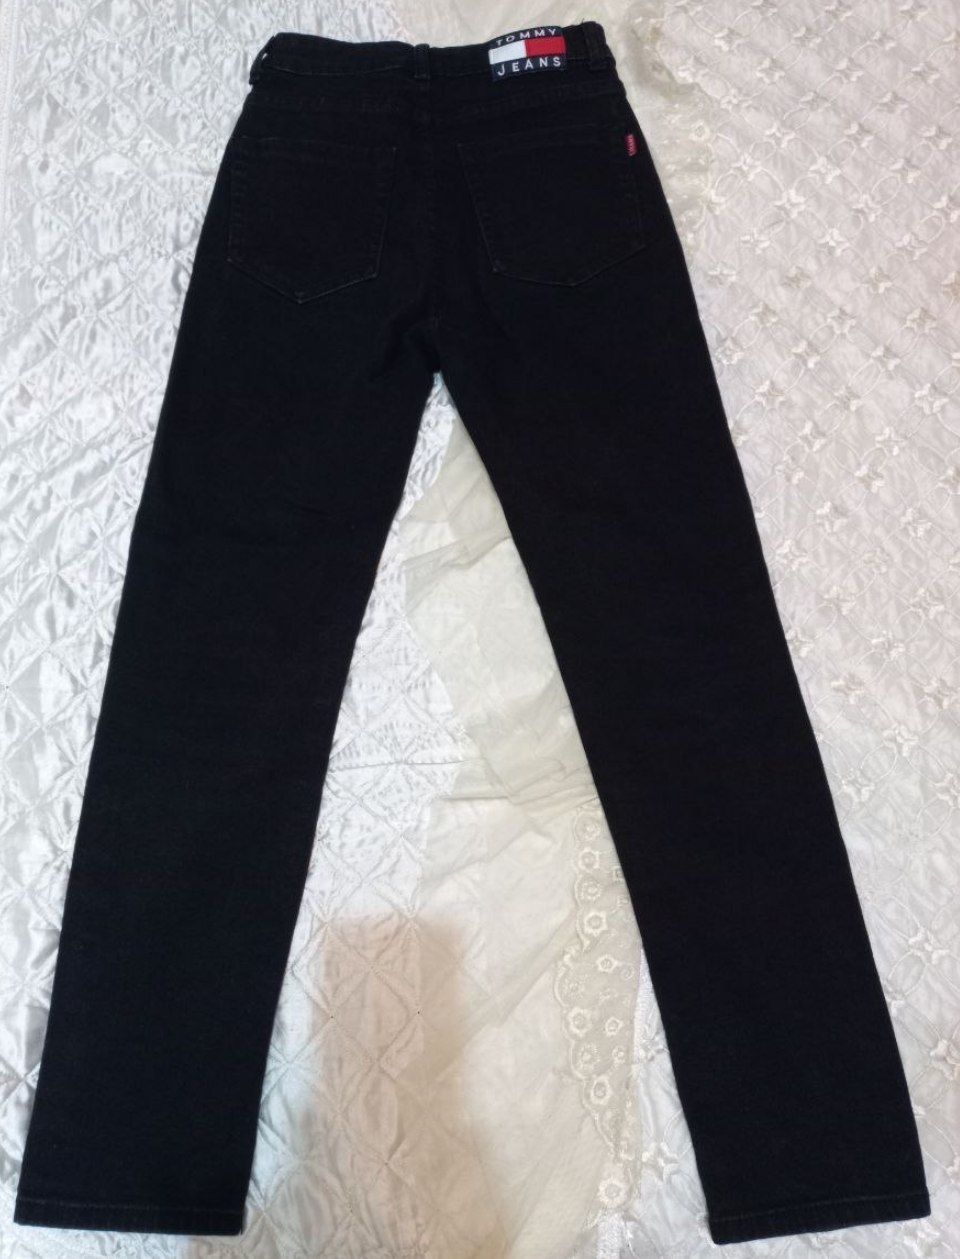 Женские черные джинсы труба 27 размер в отличном состоянии